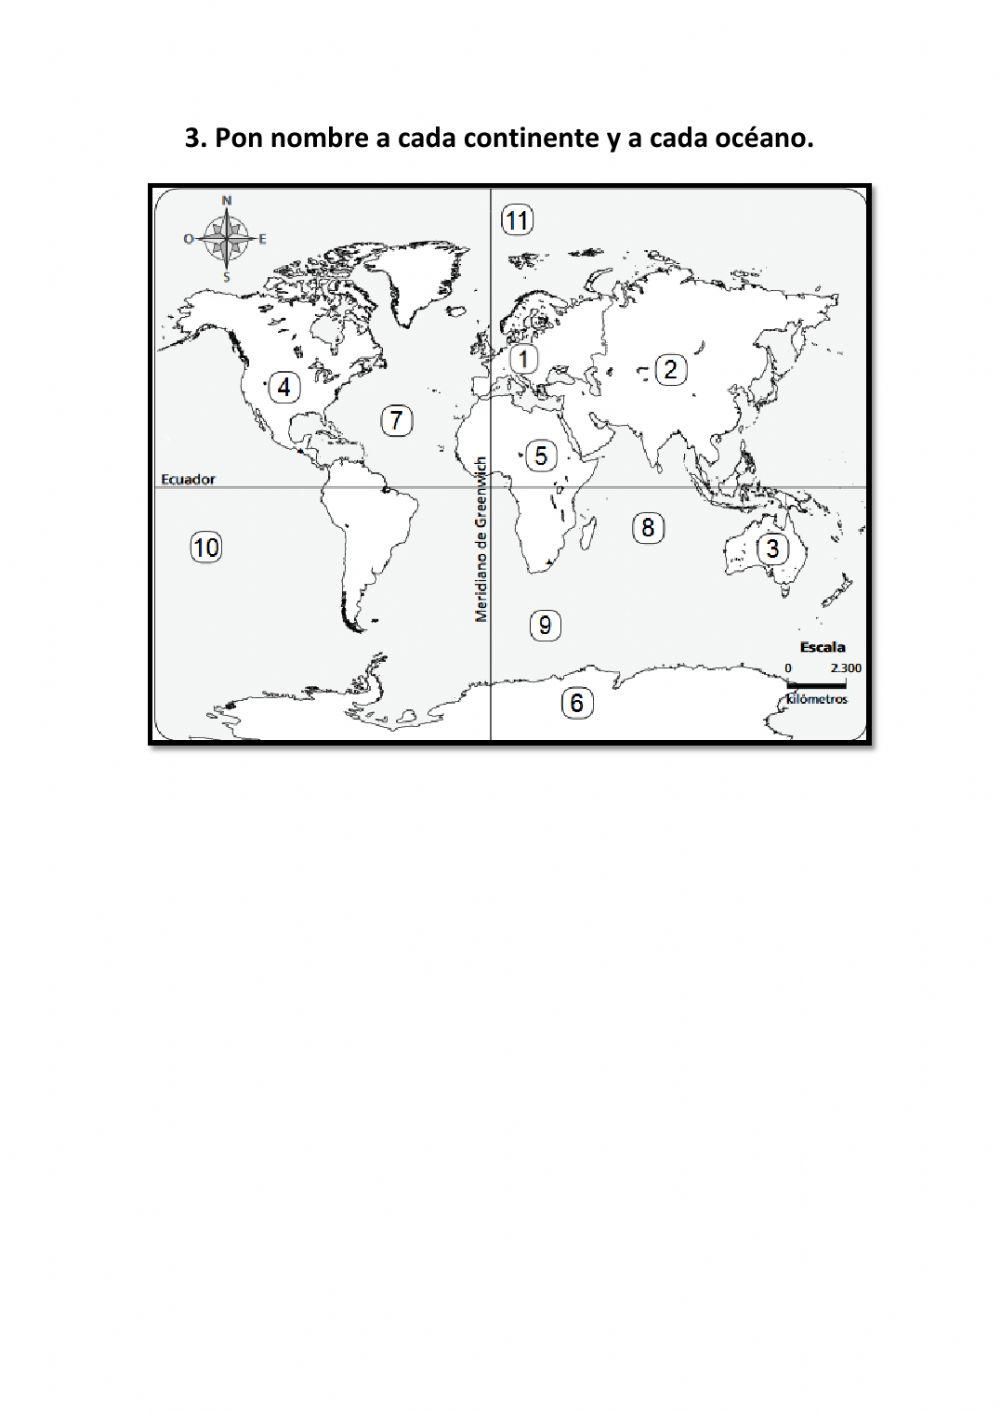 Mapa mundial mudo. Localiza continentes y océanos.